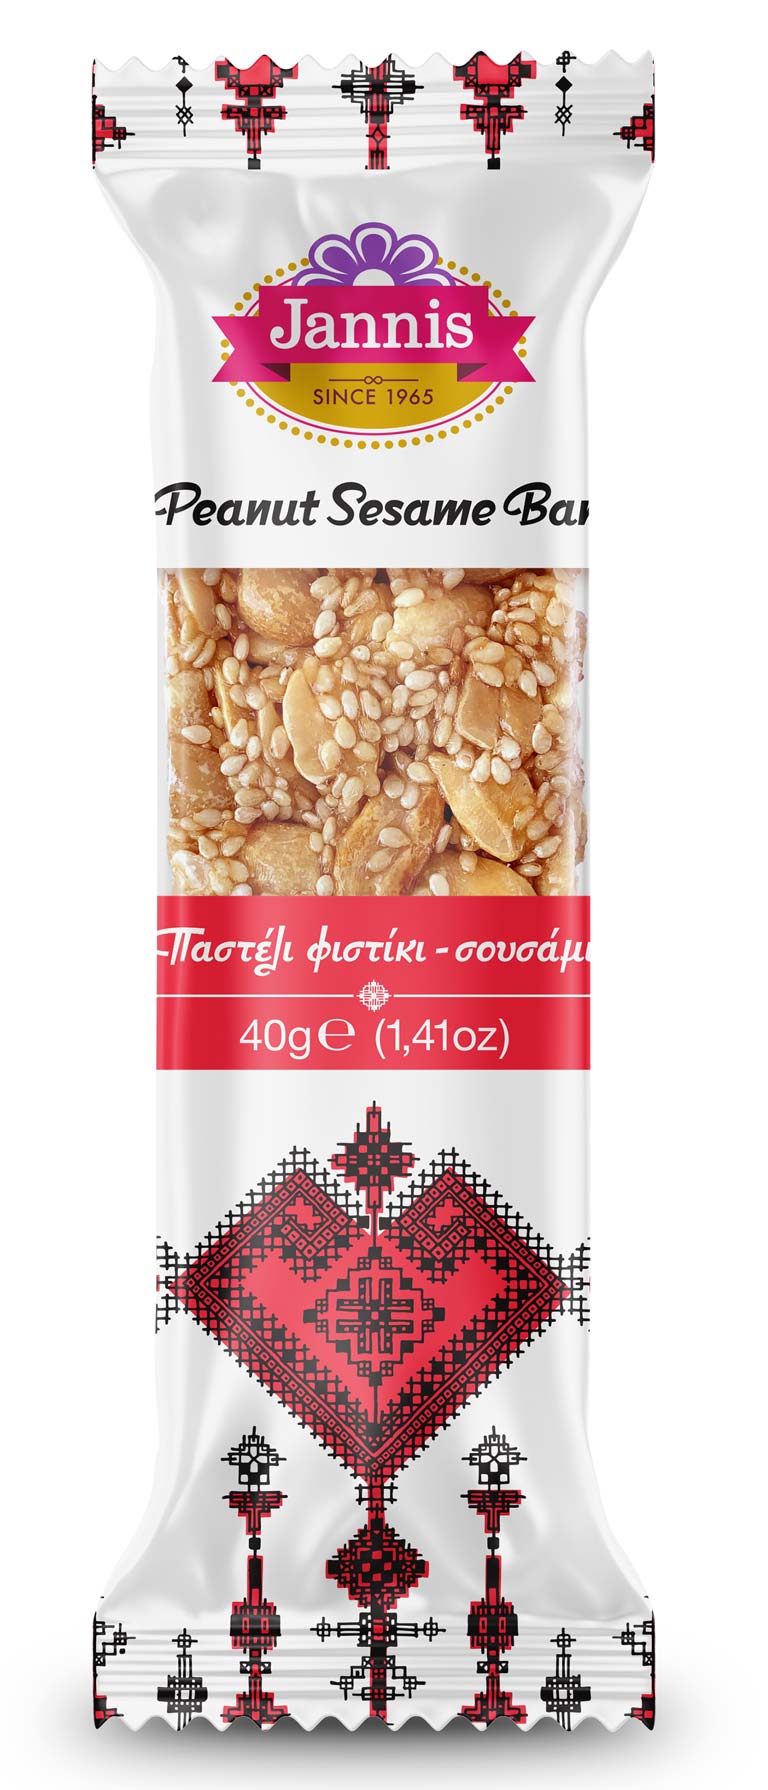 buy peanuts & sesame snack bar in bulk